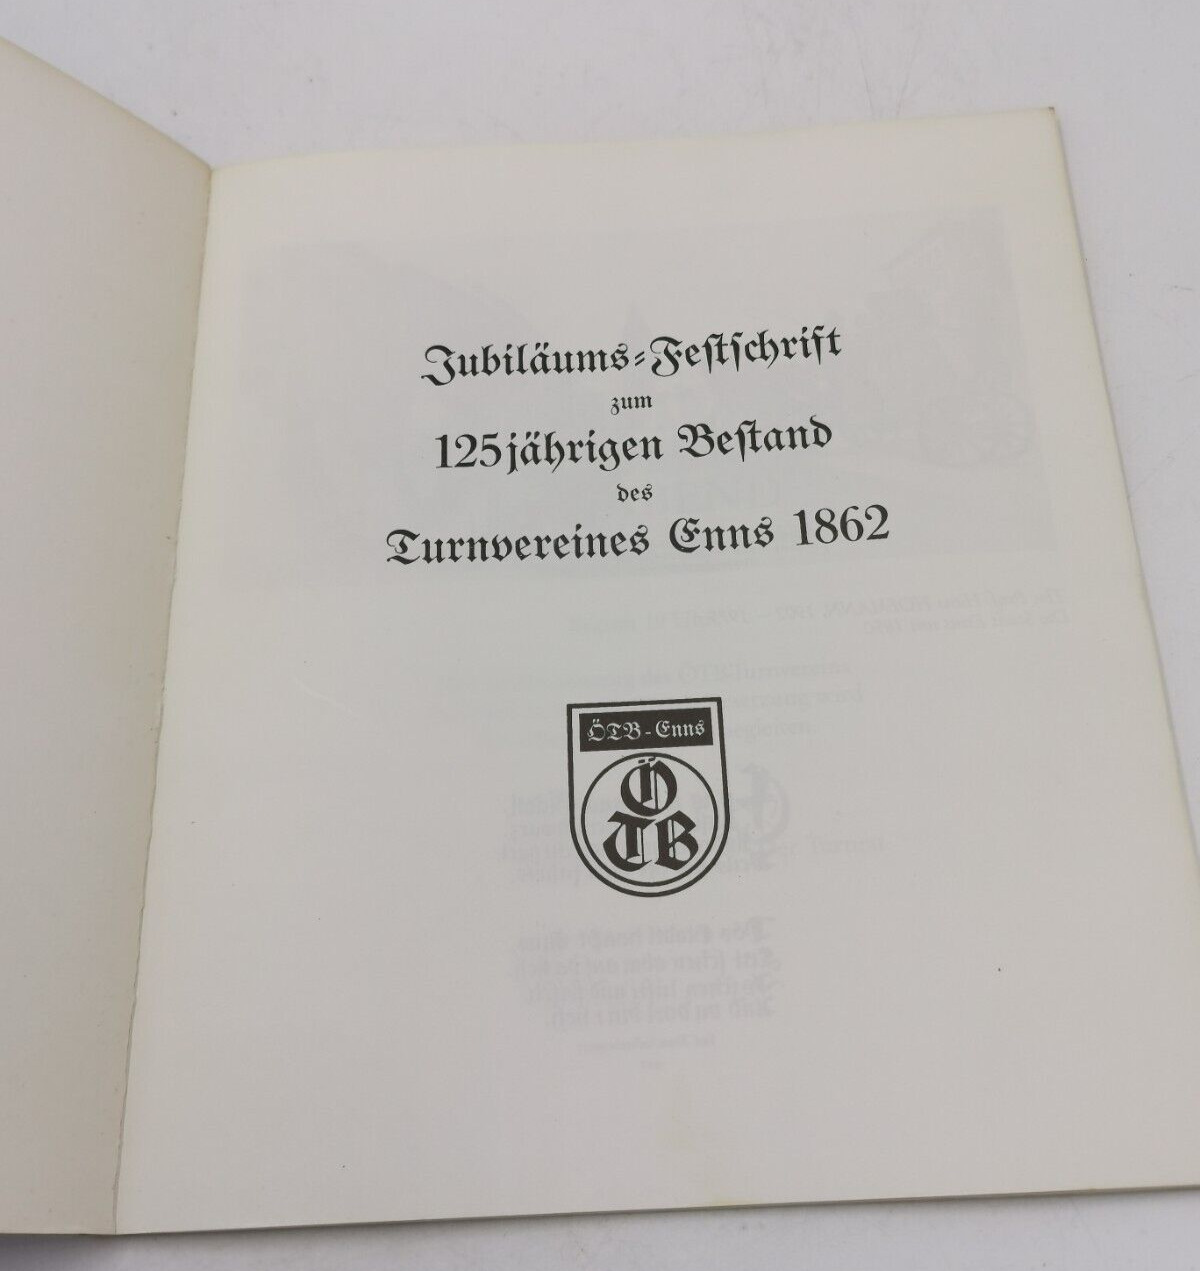 Turnverein Enns 1862 26-28 Juni 1987 Original Buch Österreich